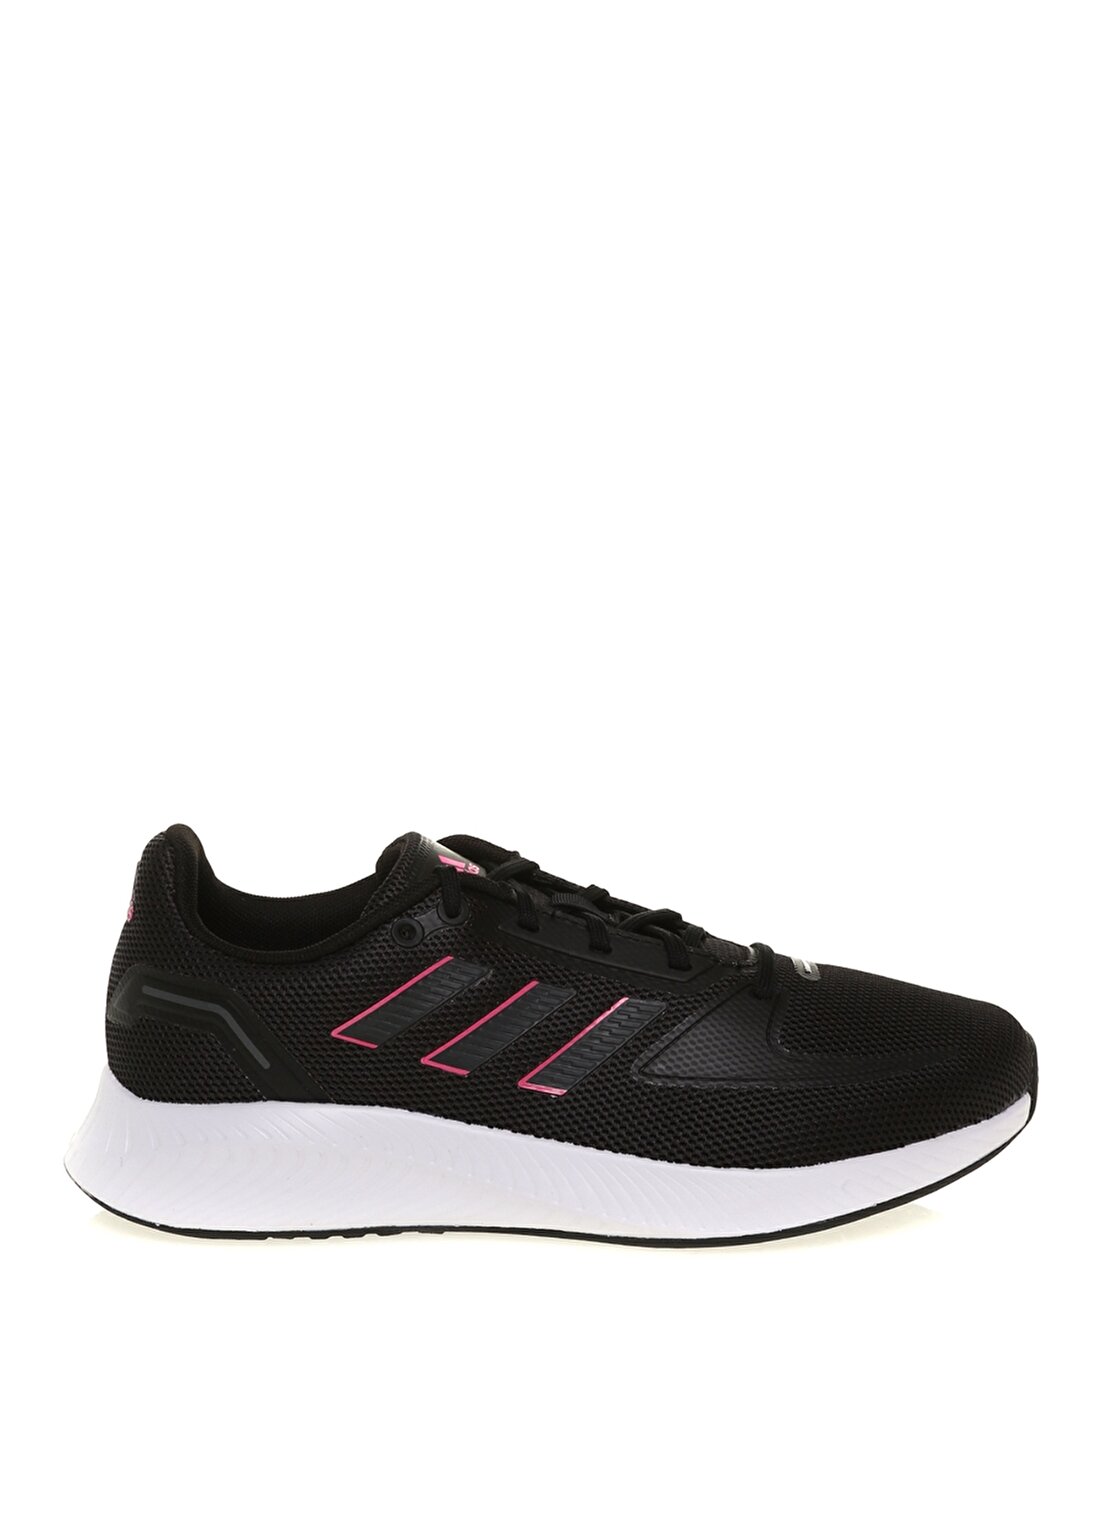 Adidas Siyah Kadın Koşu Ayakkabısı FY9624 RUNFALCON 2.0